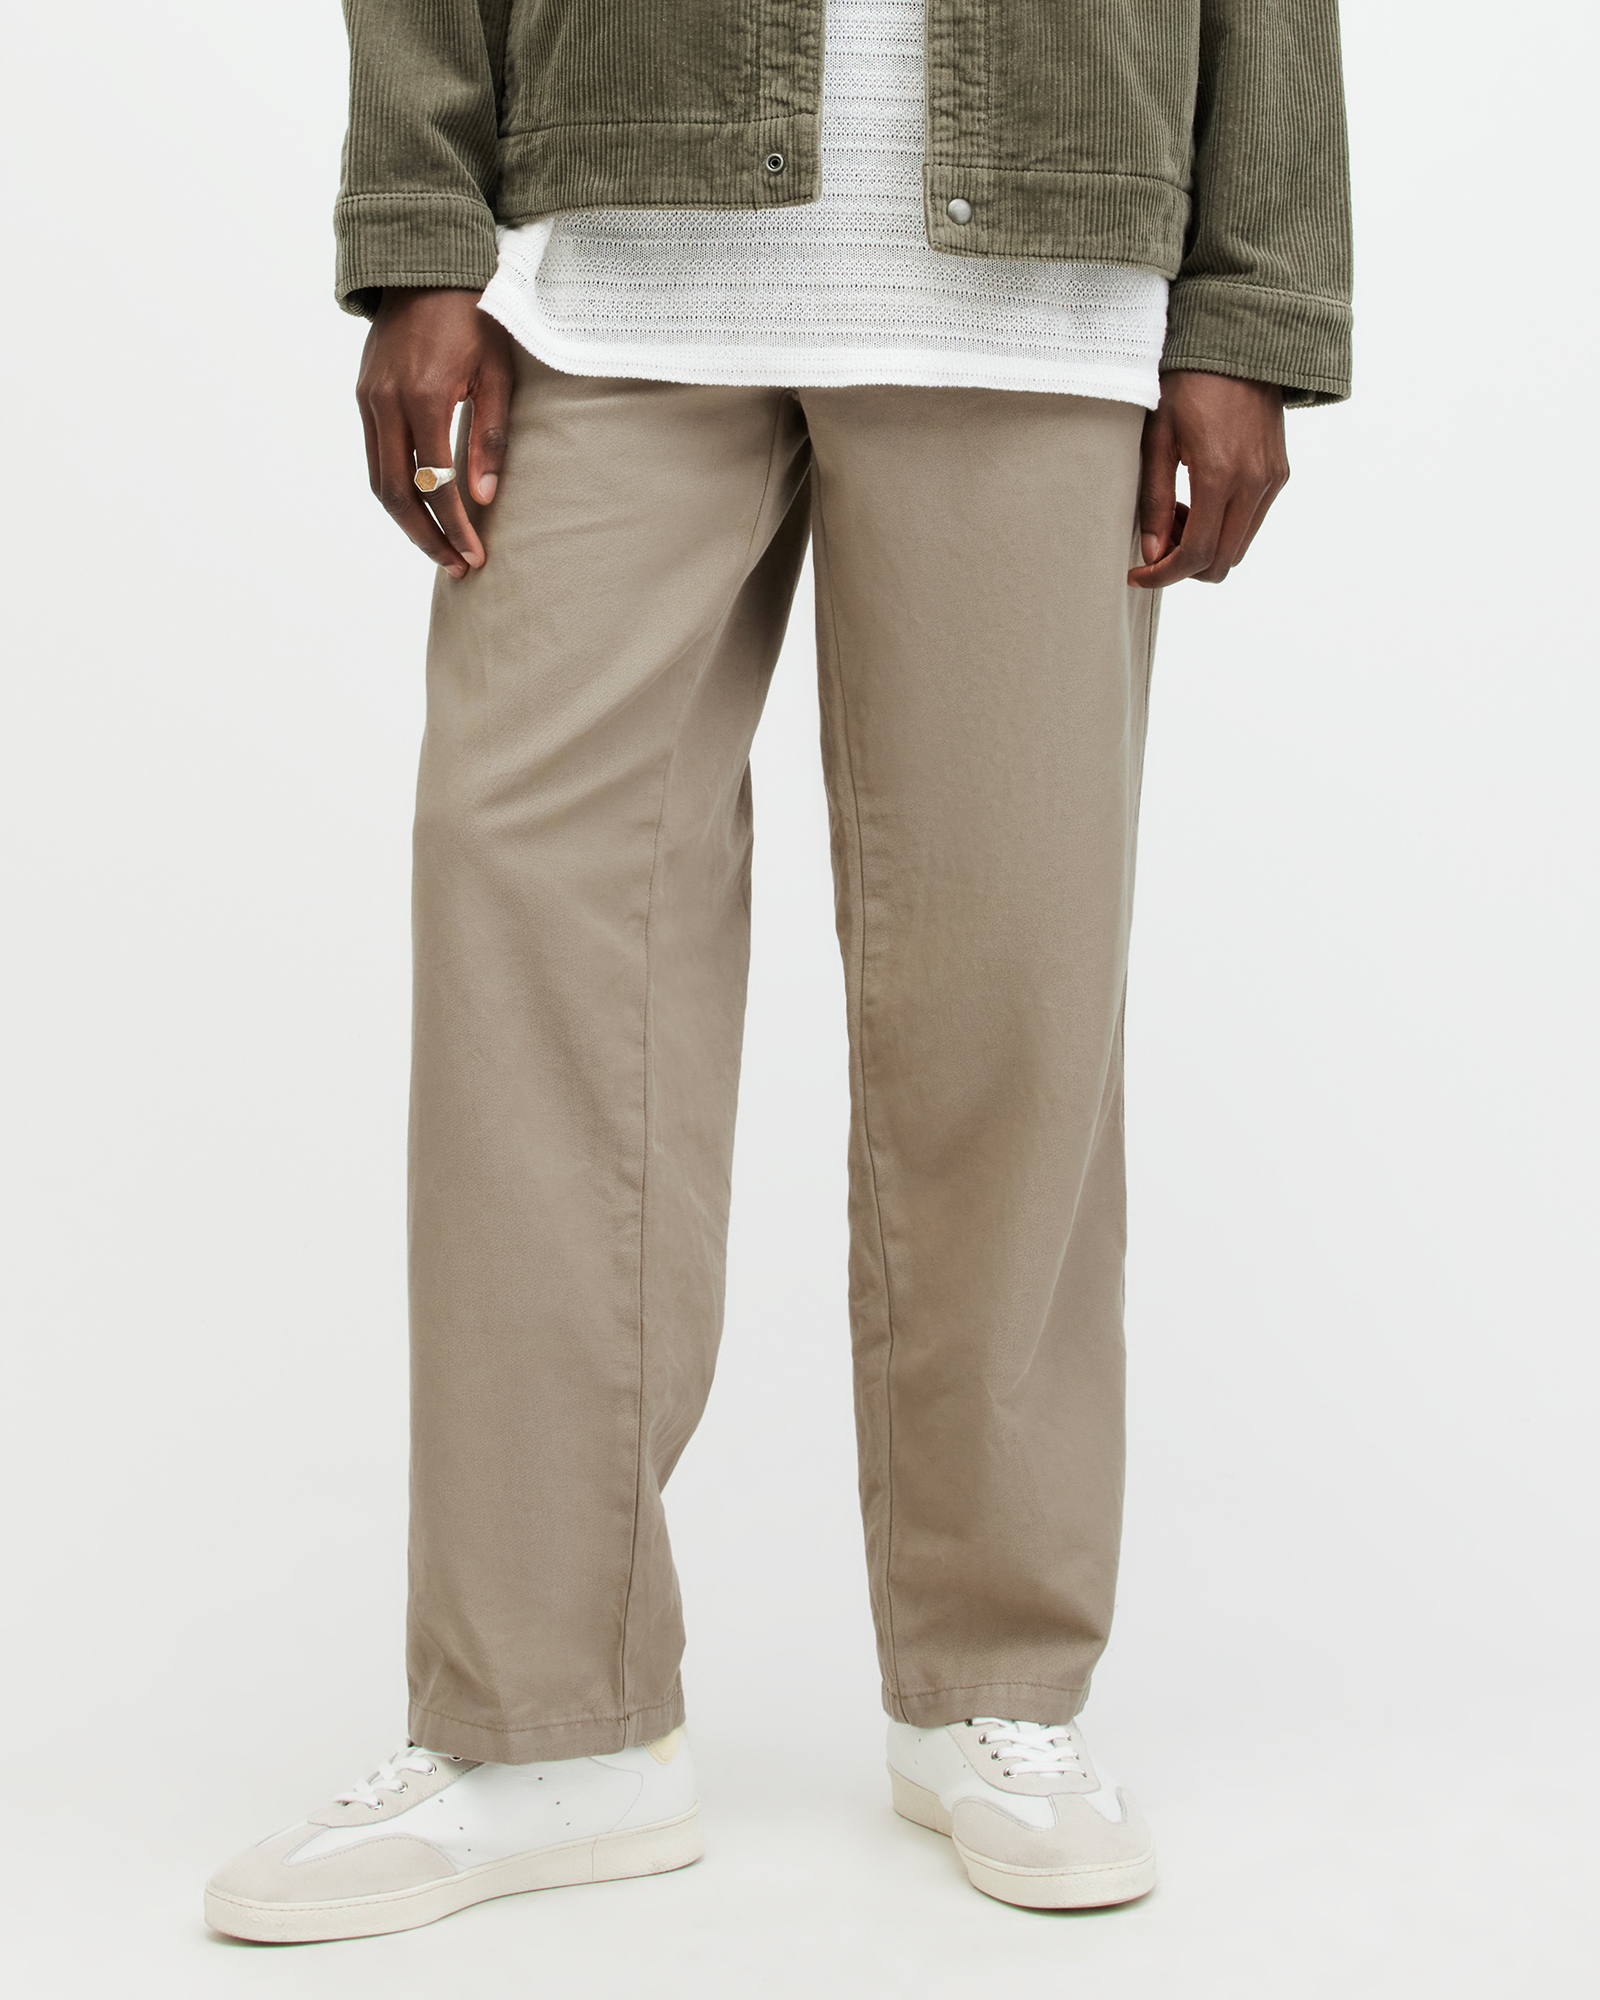 AllSaints Hanbury Linen Blend Relaxed Fit Trousers,, Beige